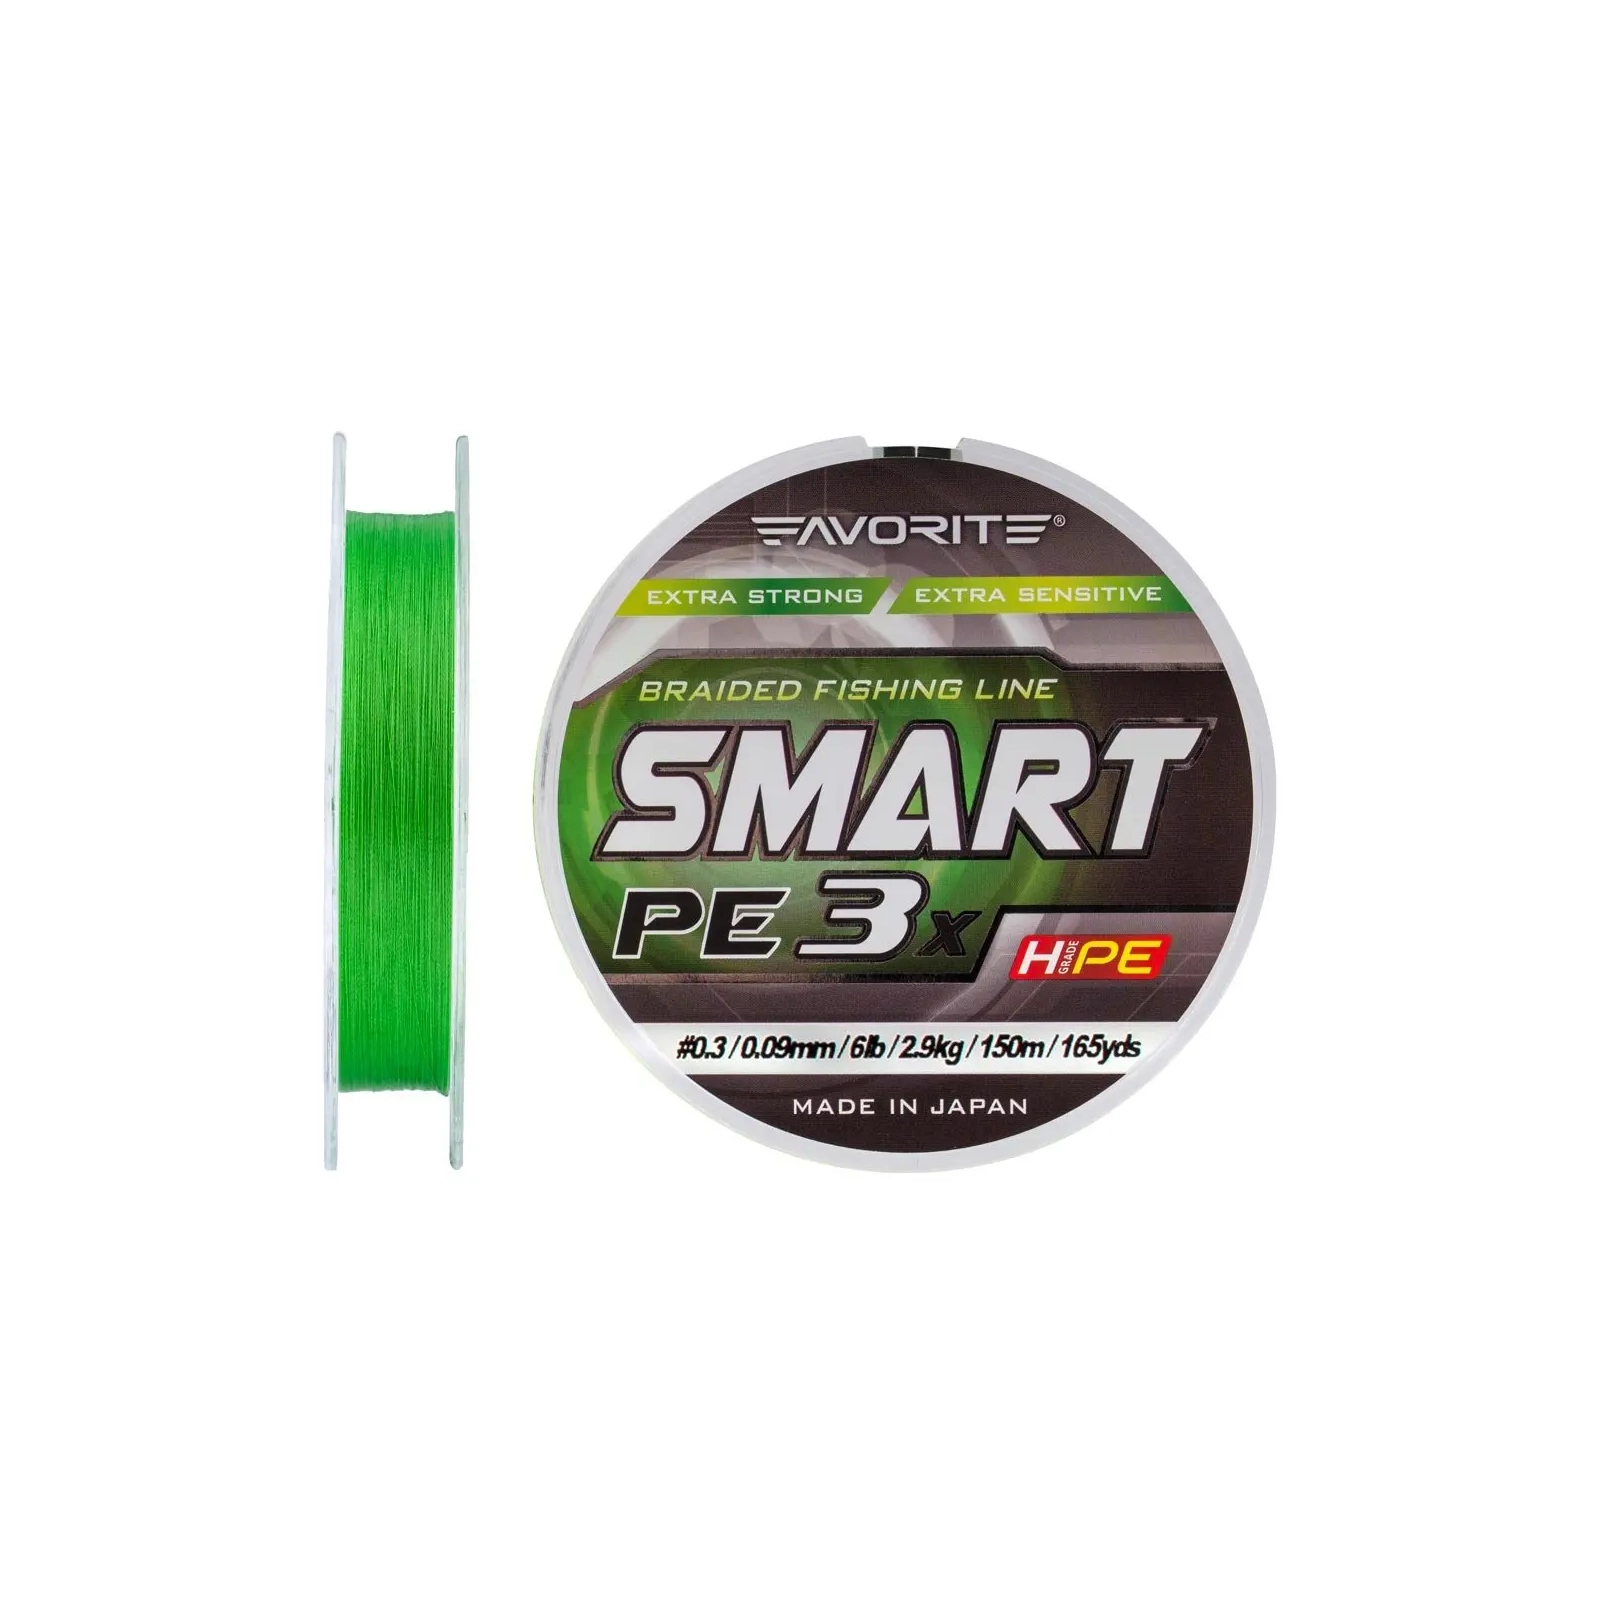 Шнур Favorite Smart PE 3x 150м 0.3/0.09mm 6lb/2.9kg Light Green (1693.10.63) зображення 2